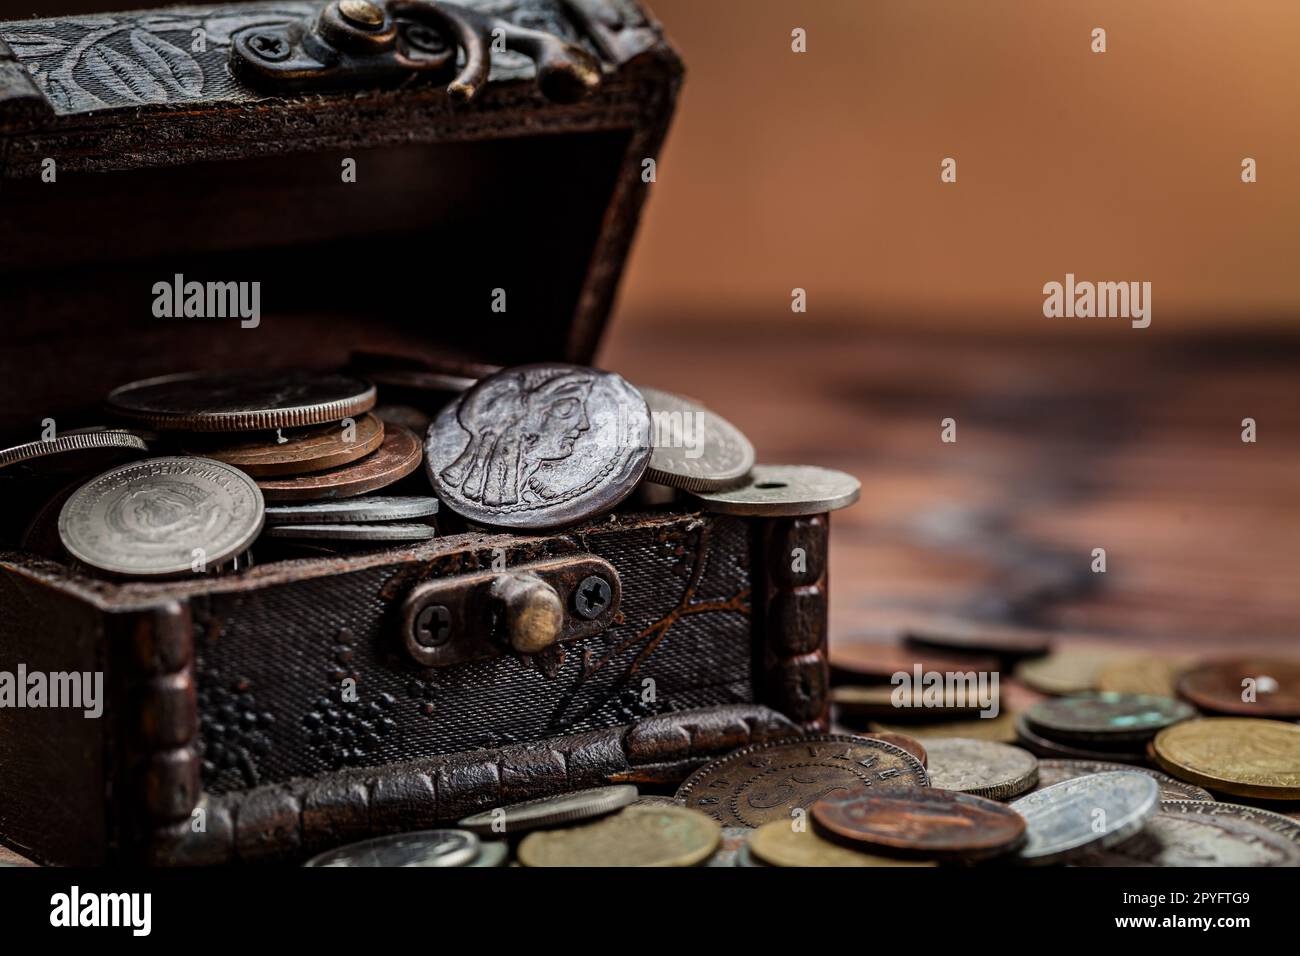 Pile de monnaie pile d'argent liquide après avoir brisé la boîte à argent.  Concept d'économie d'argent et de croissance financière Photo Stock - Alamy